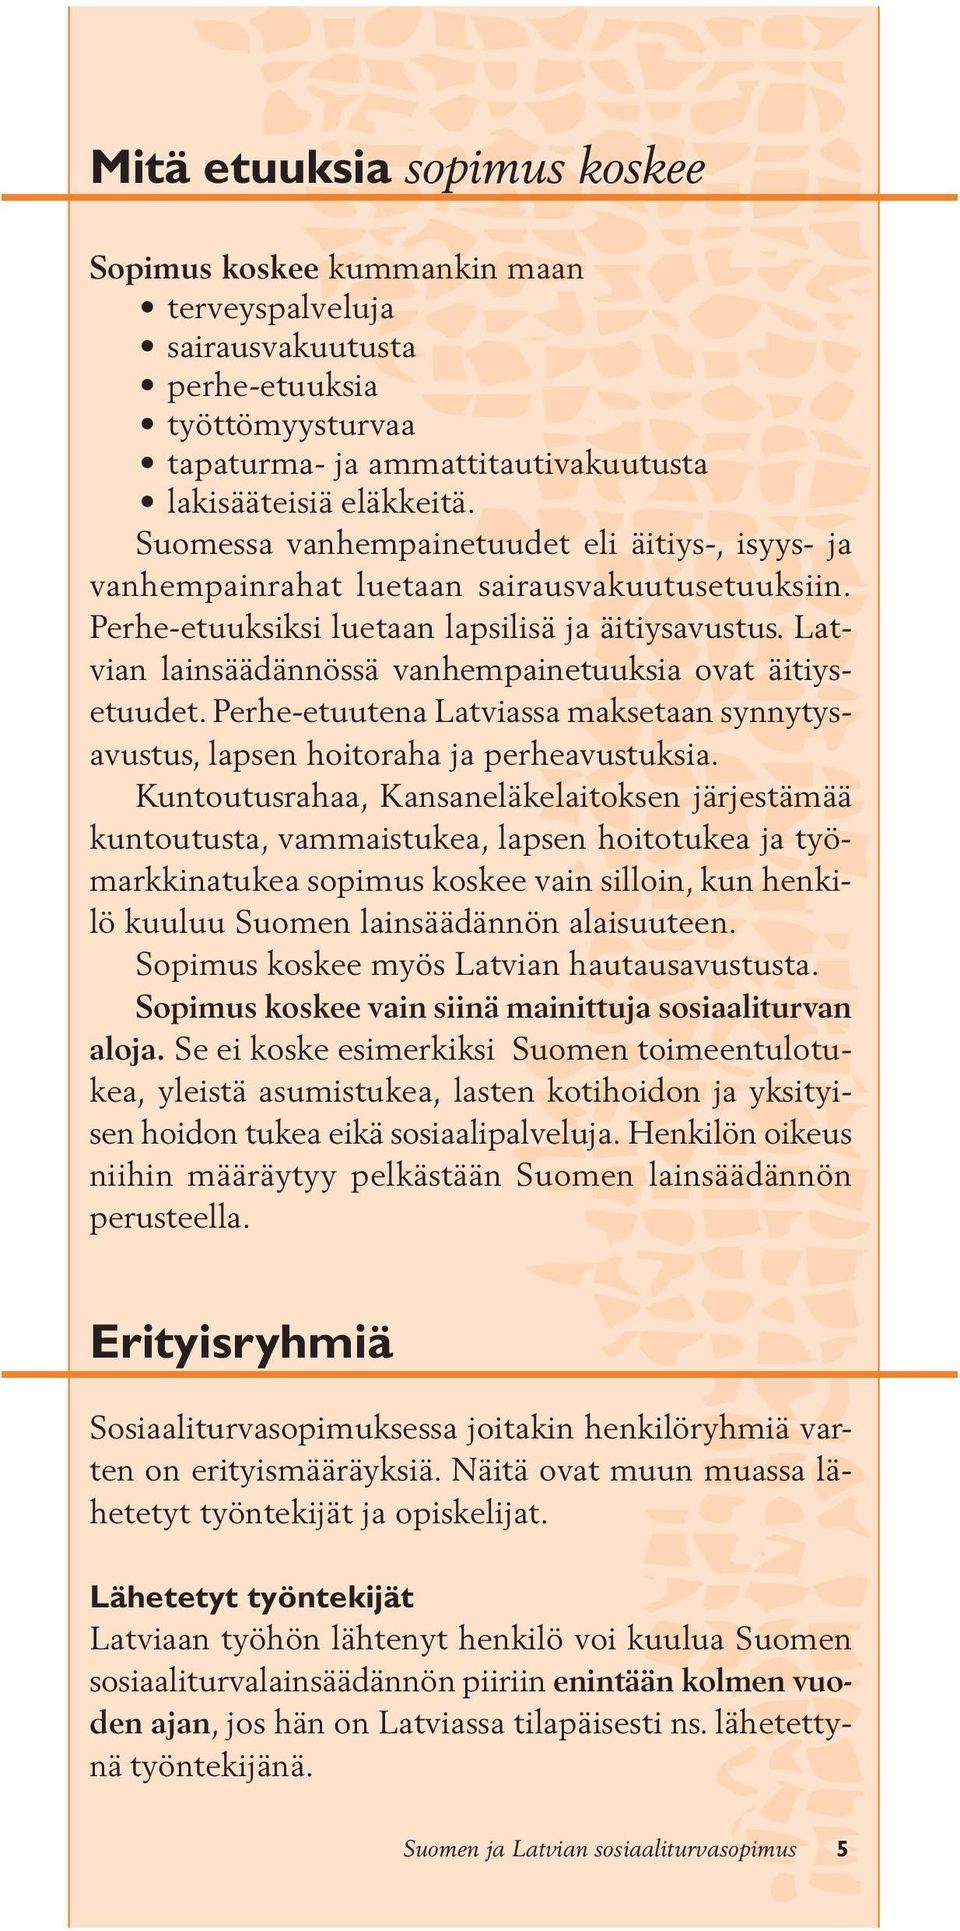 Latvian lainsäädännössä vanhempainetuuksia ovat äitiysetuudet. Perhe-etuutena Latviassa maksetaan synnytysavustus, lapsen hoitoraha ja perheavustuksia.